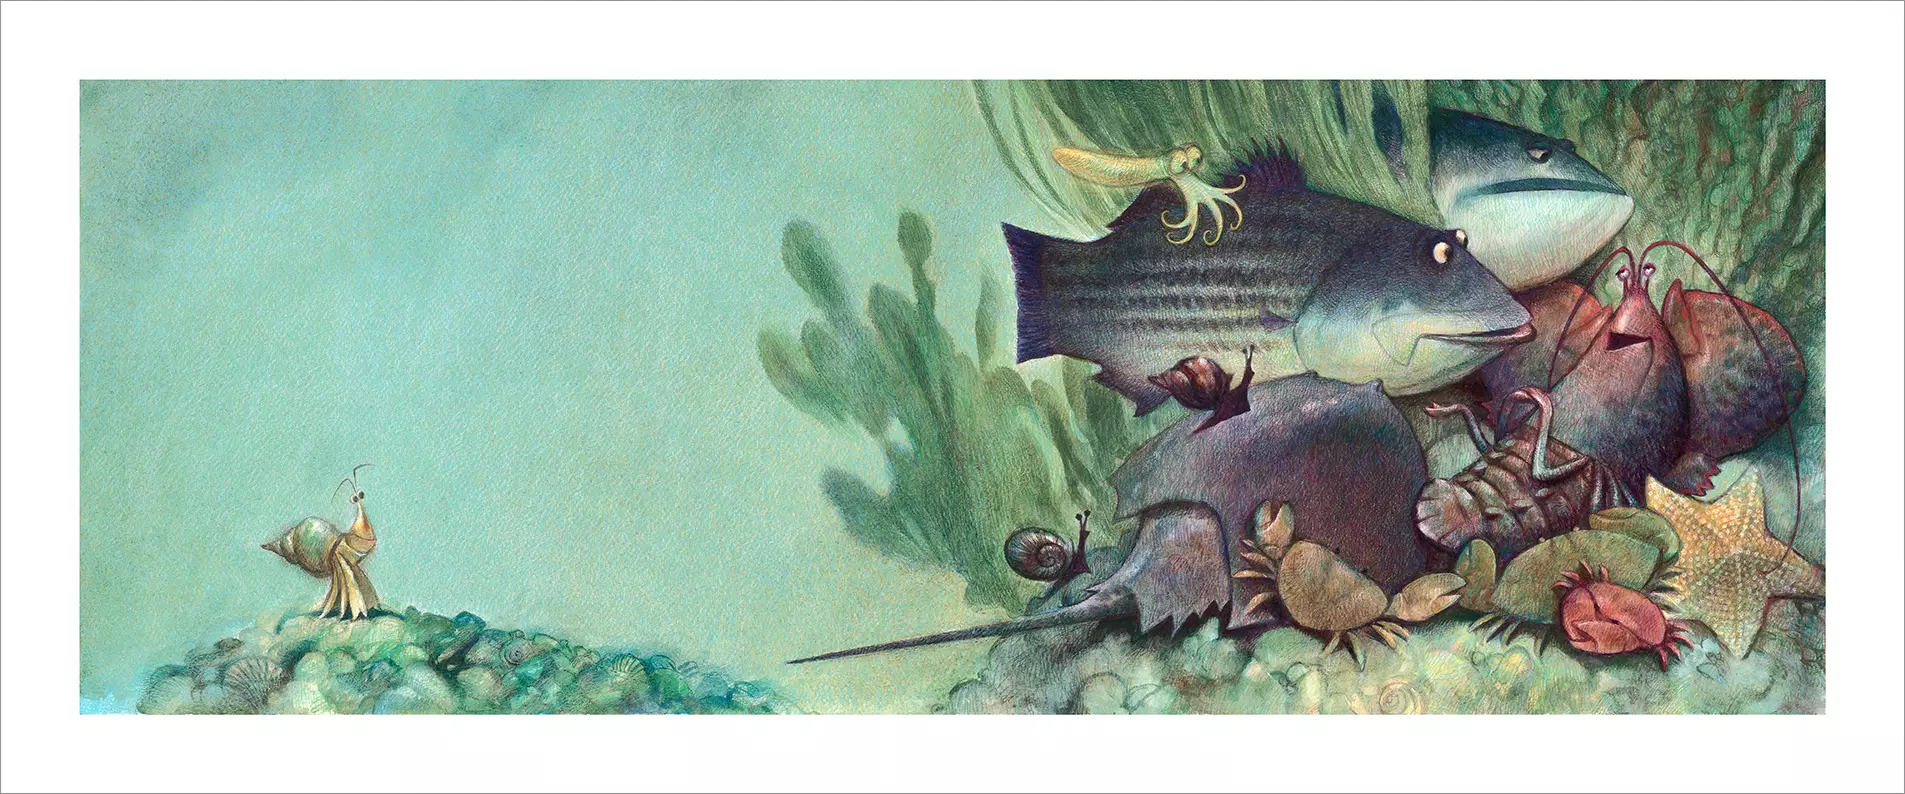 The Hermit Crab - Pg. 6 - Friends [PRINT], Carter Goodrich